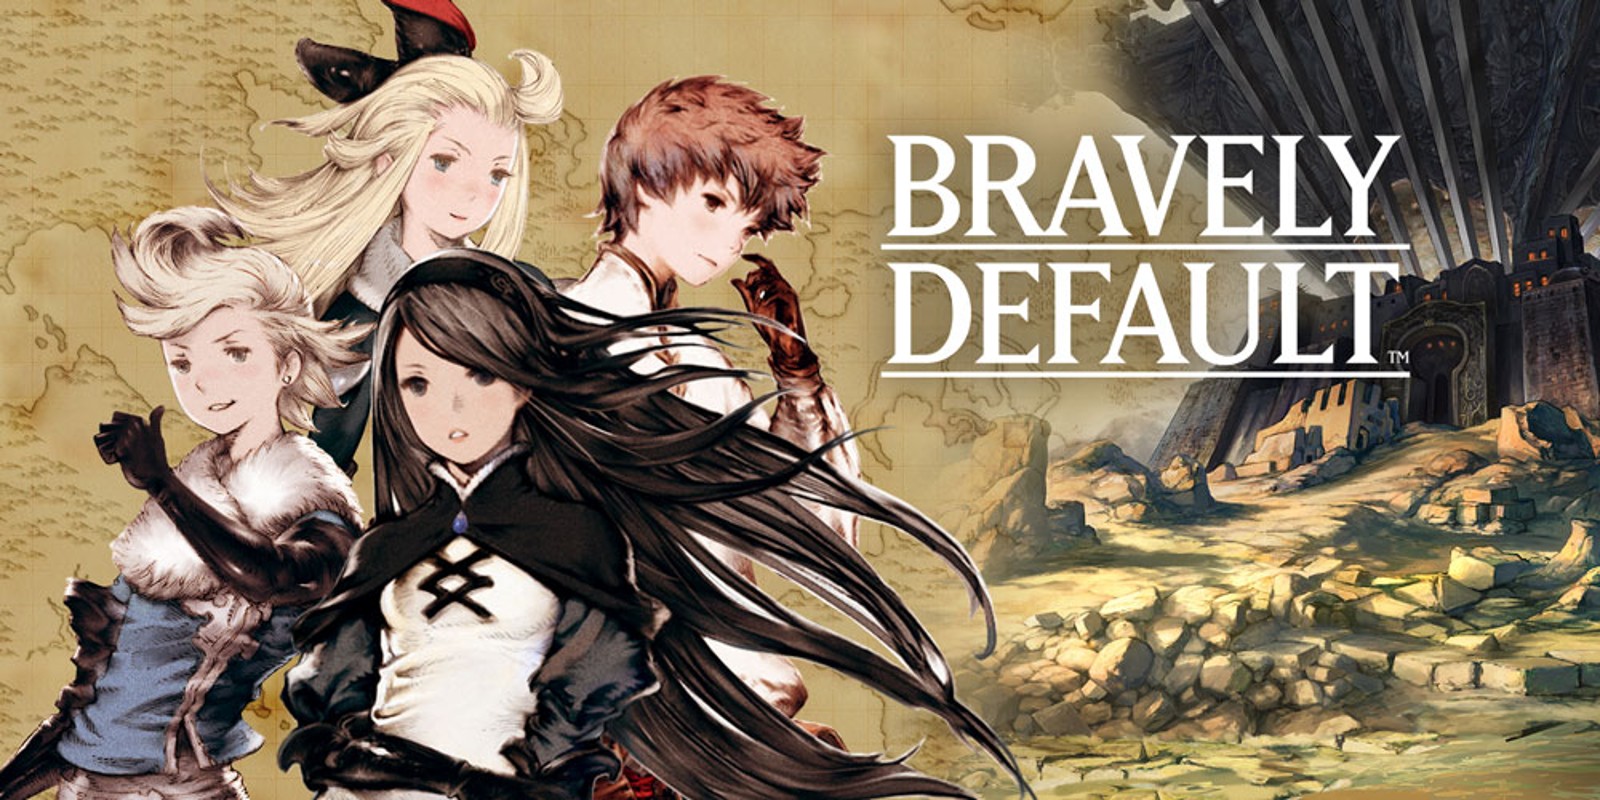 Bravely Default 3DS Square Enix